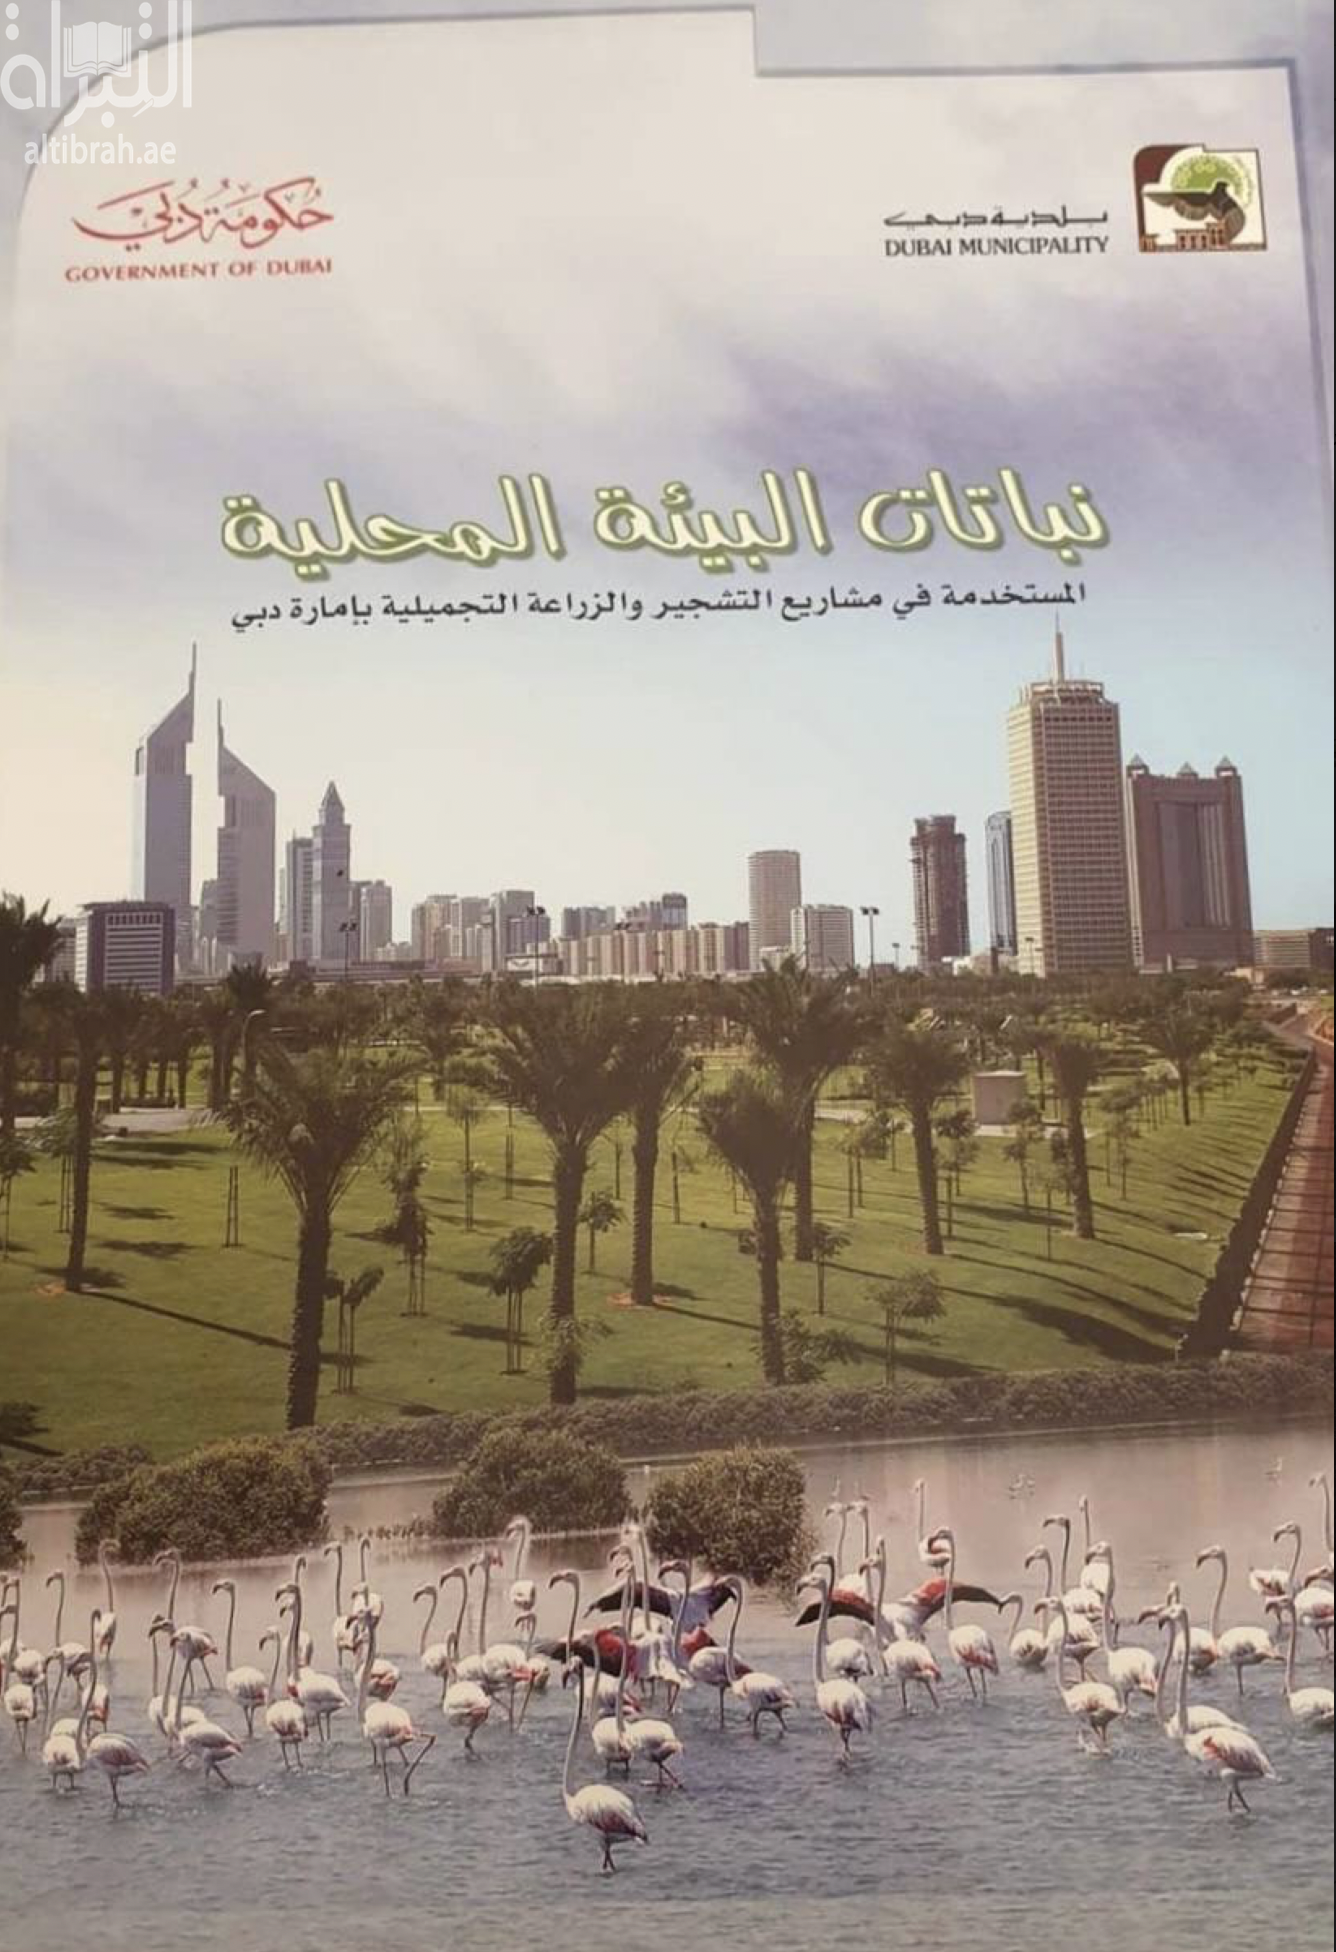 غلاف كتاب نباتات البيئة المحلية المستخدمة في مشاريع التشجير والزراعة التجميلية بإمارة دبي